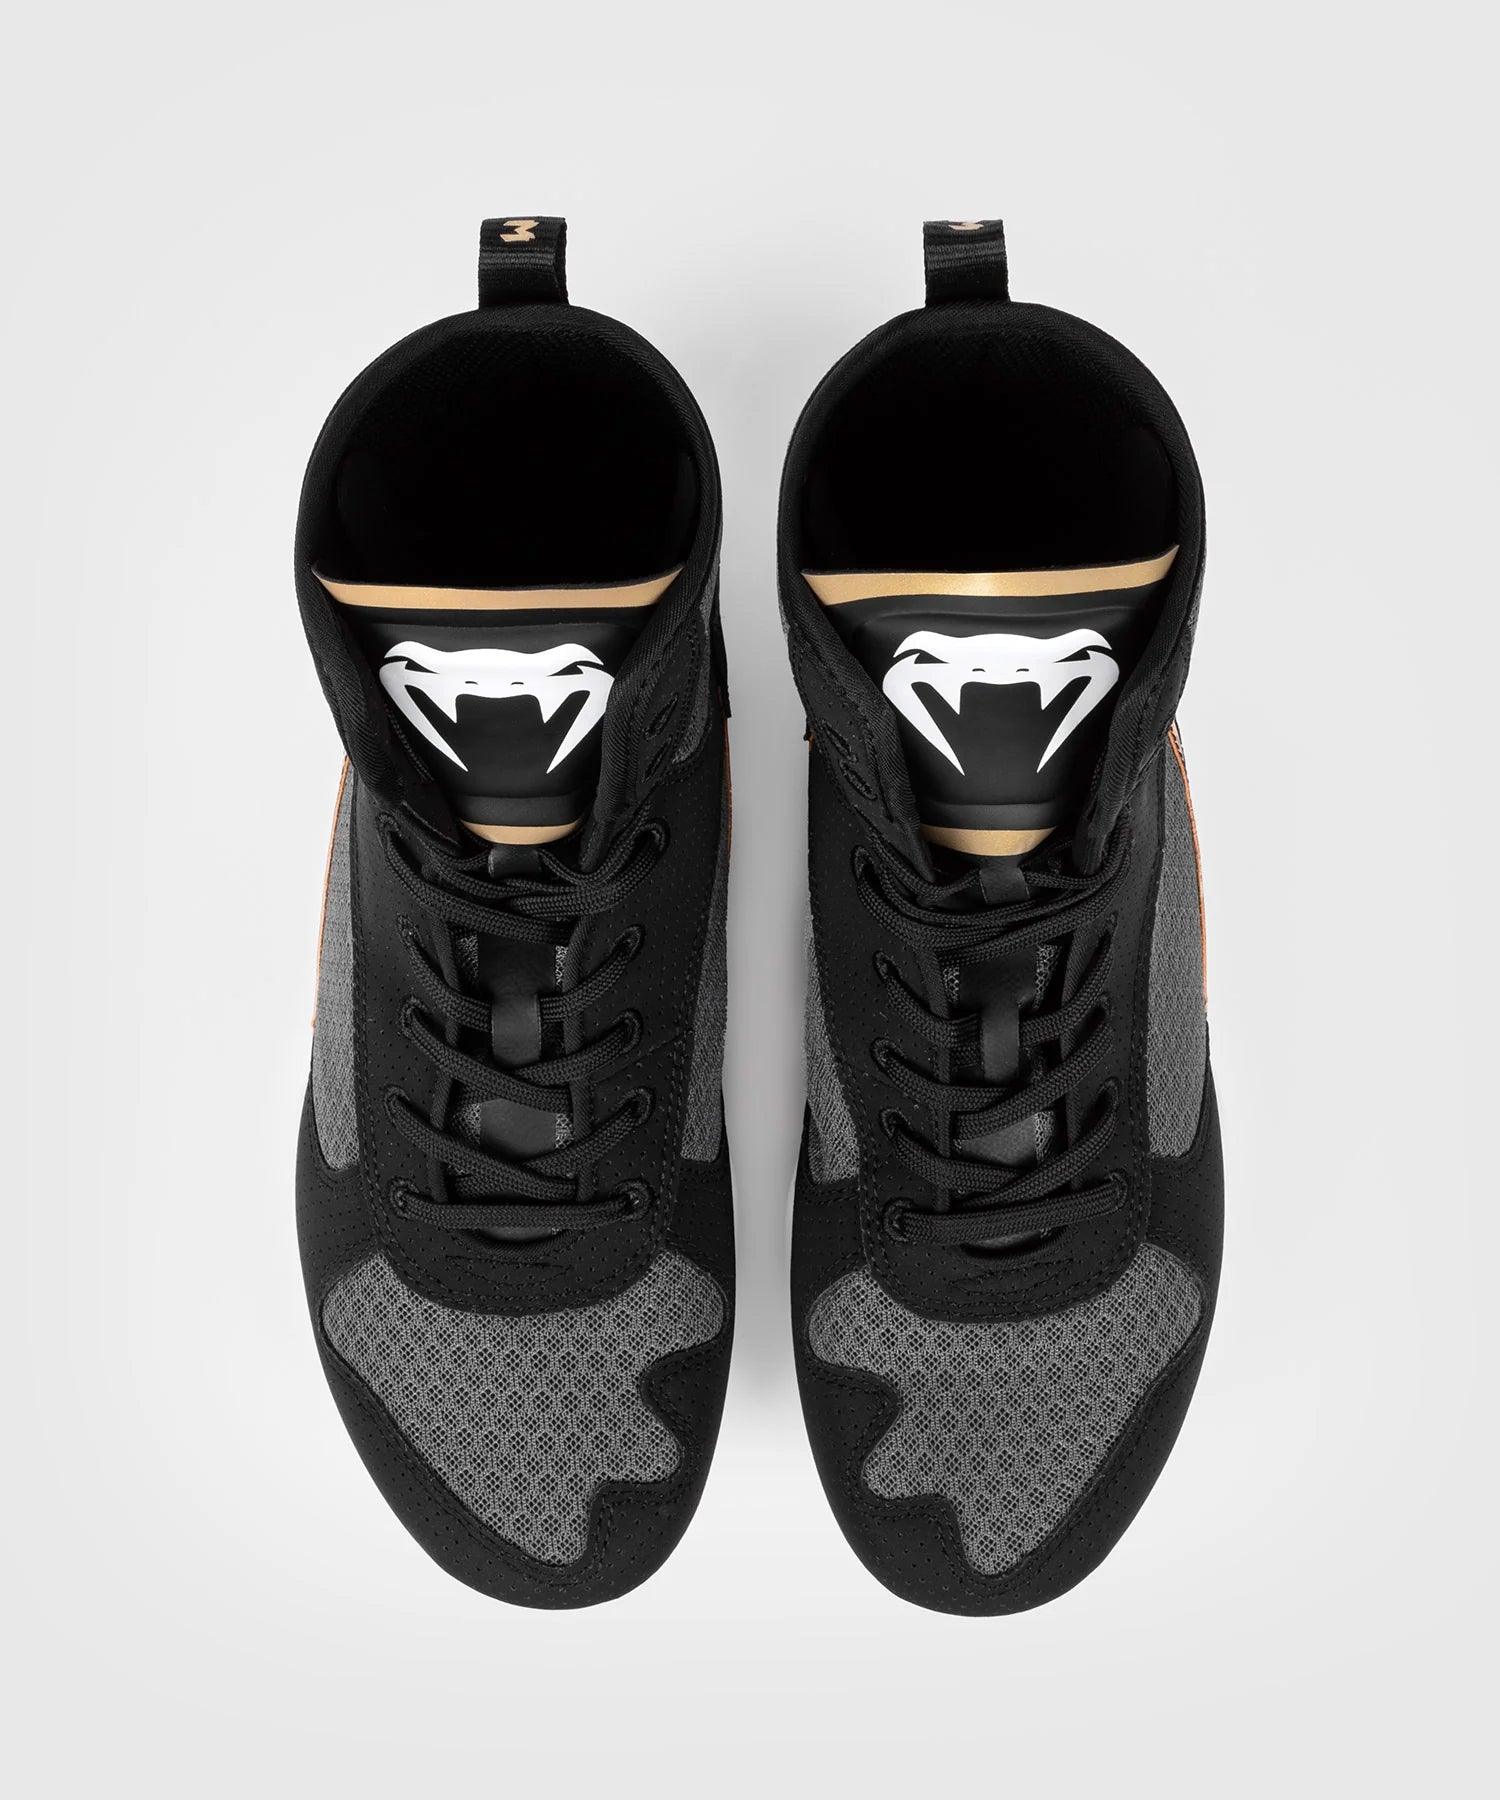 Chaussures de boxe Venum Elite - Noir/Blanc/Or